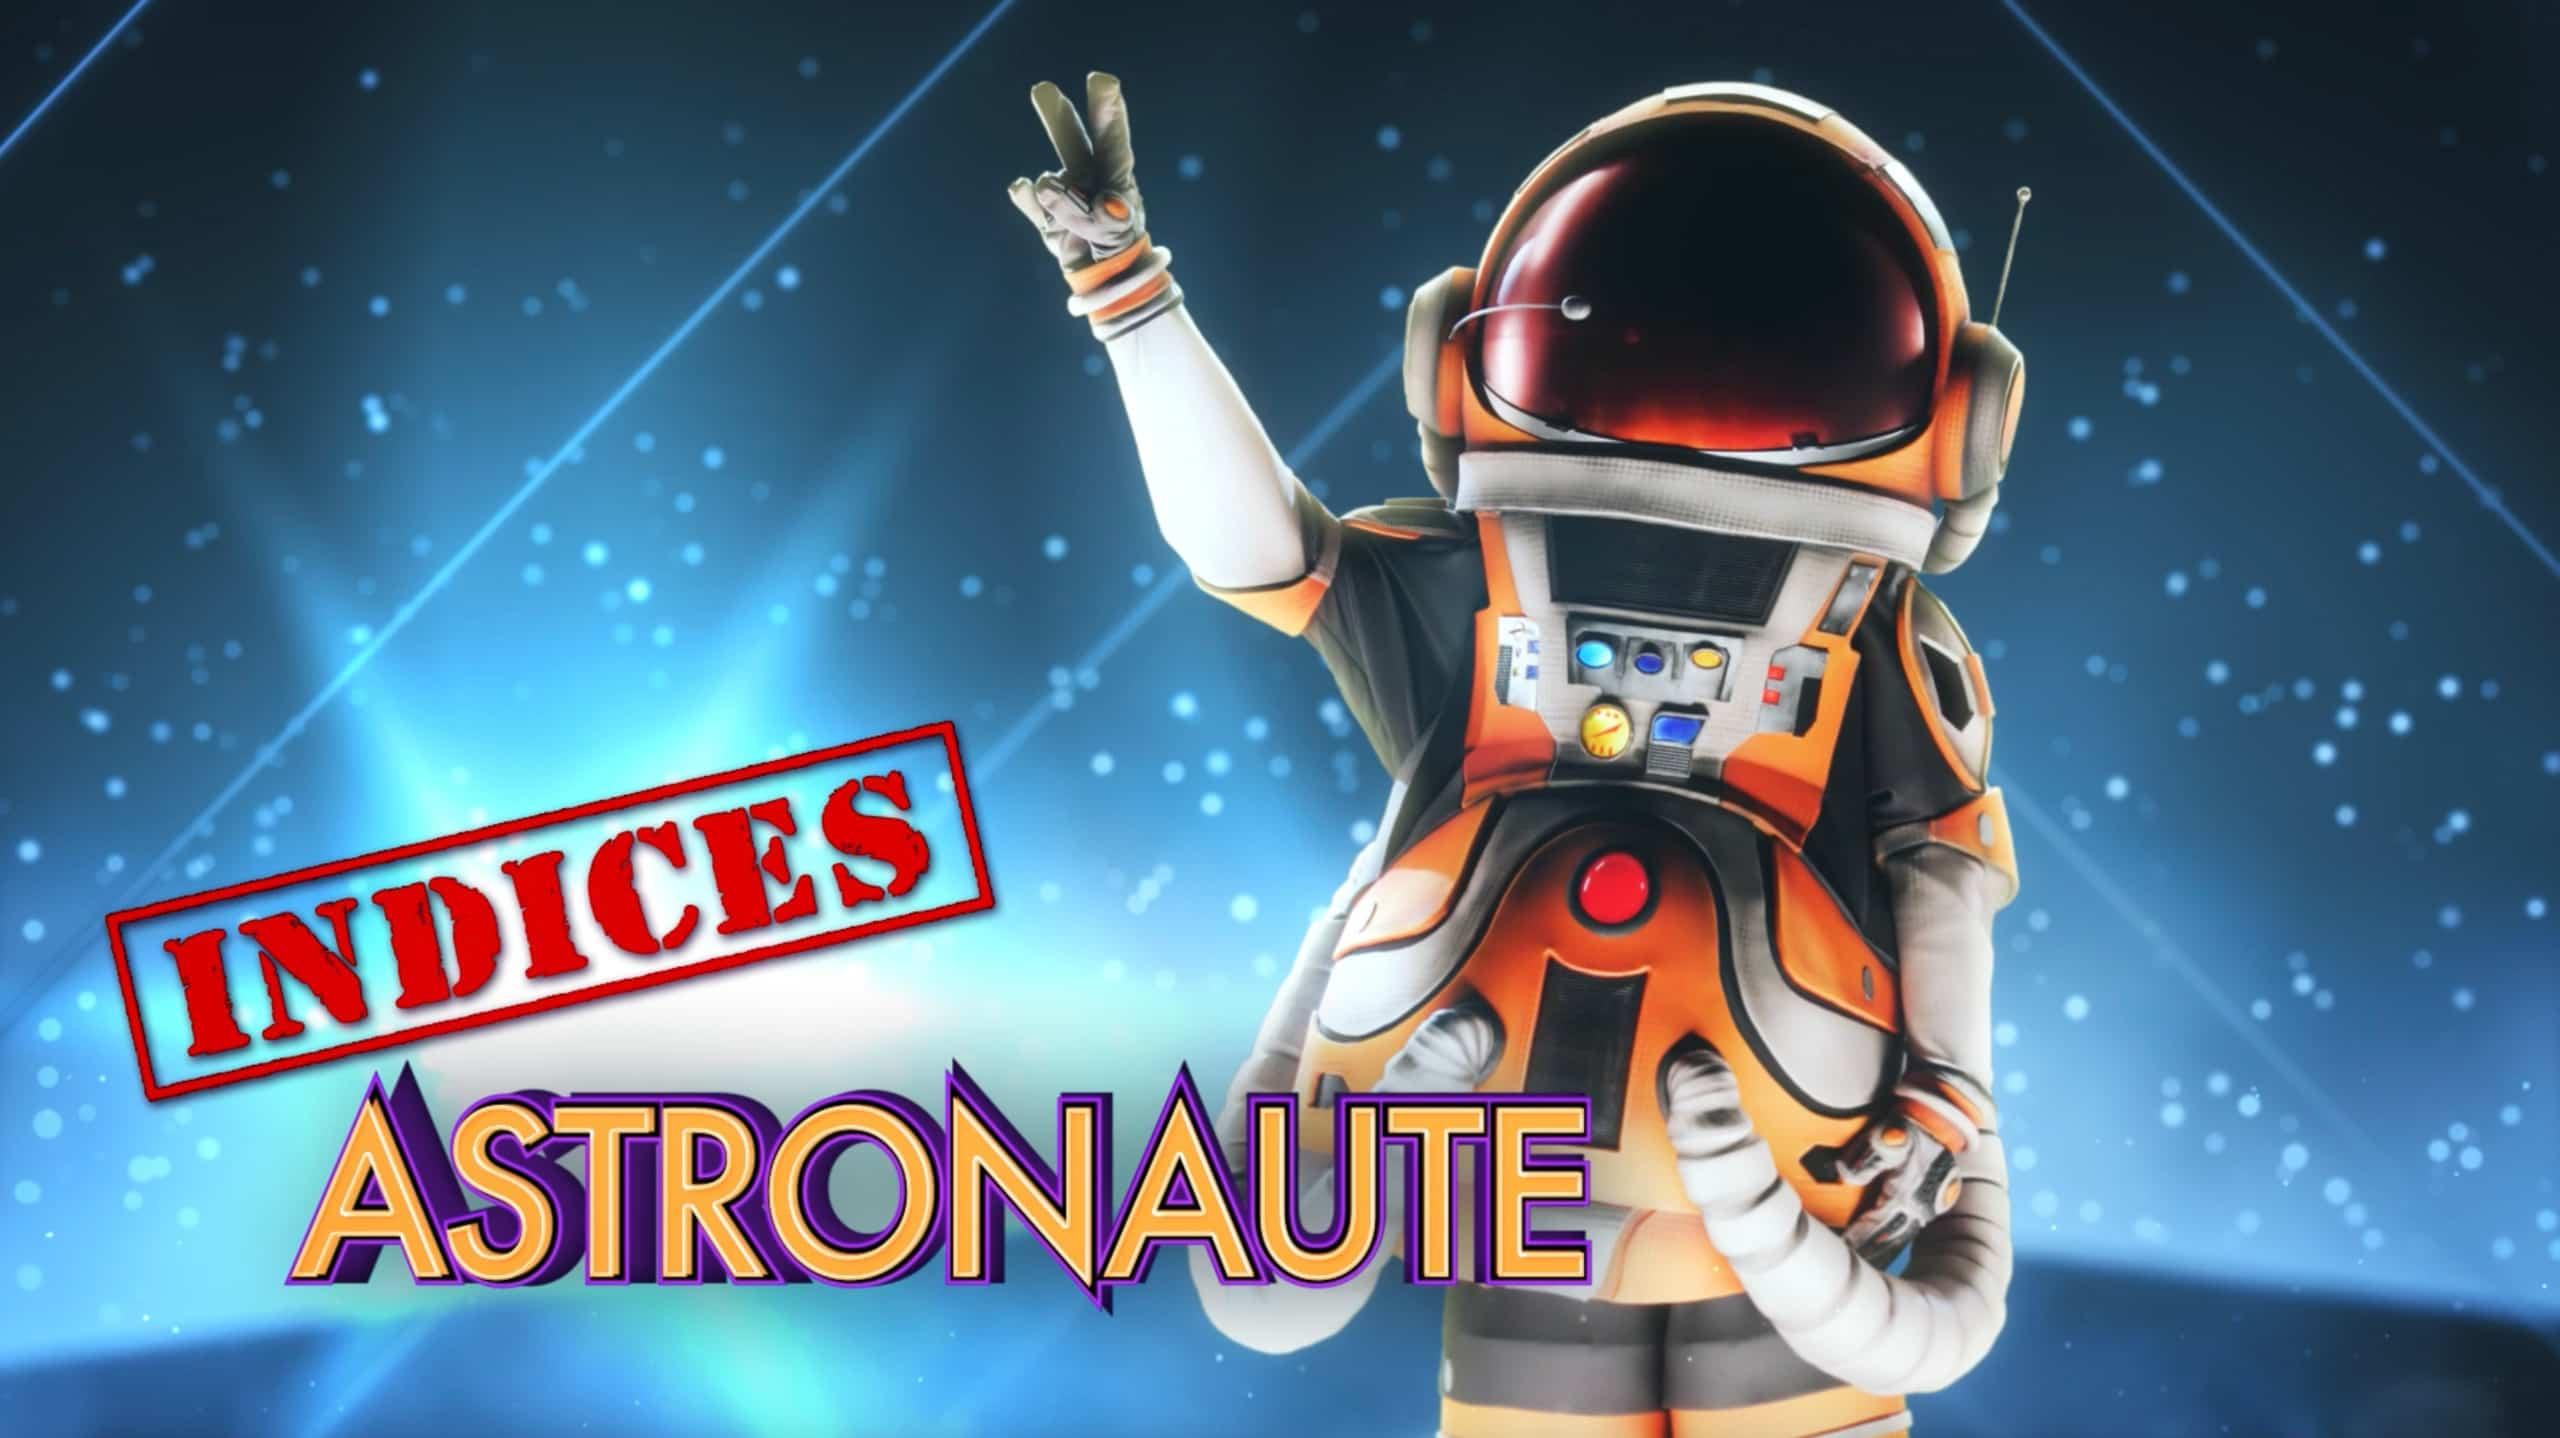 Astronaute - Indices 4